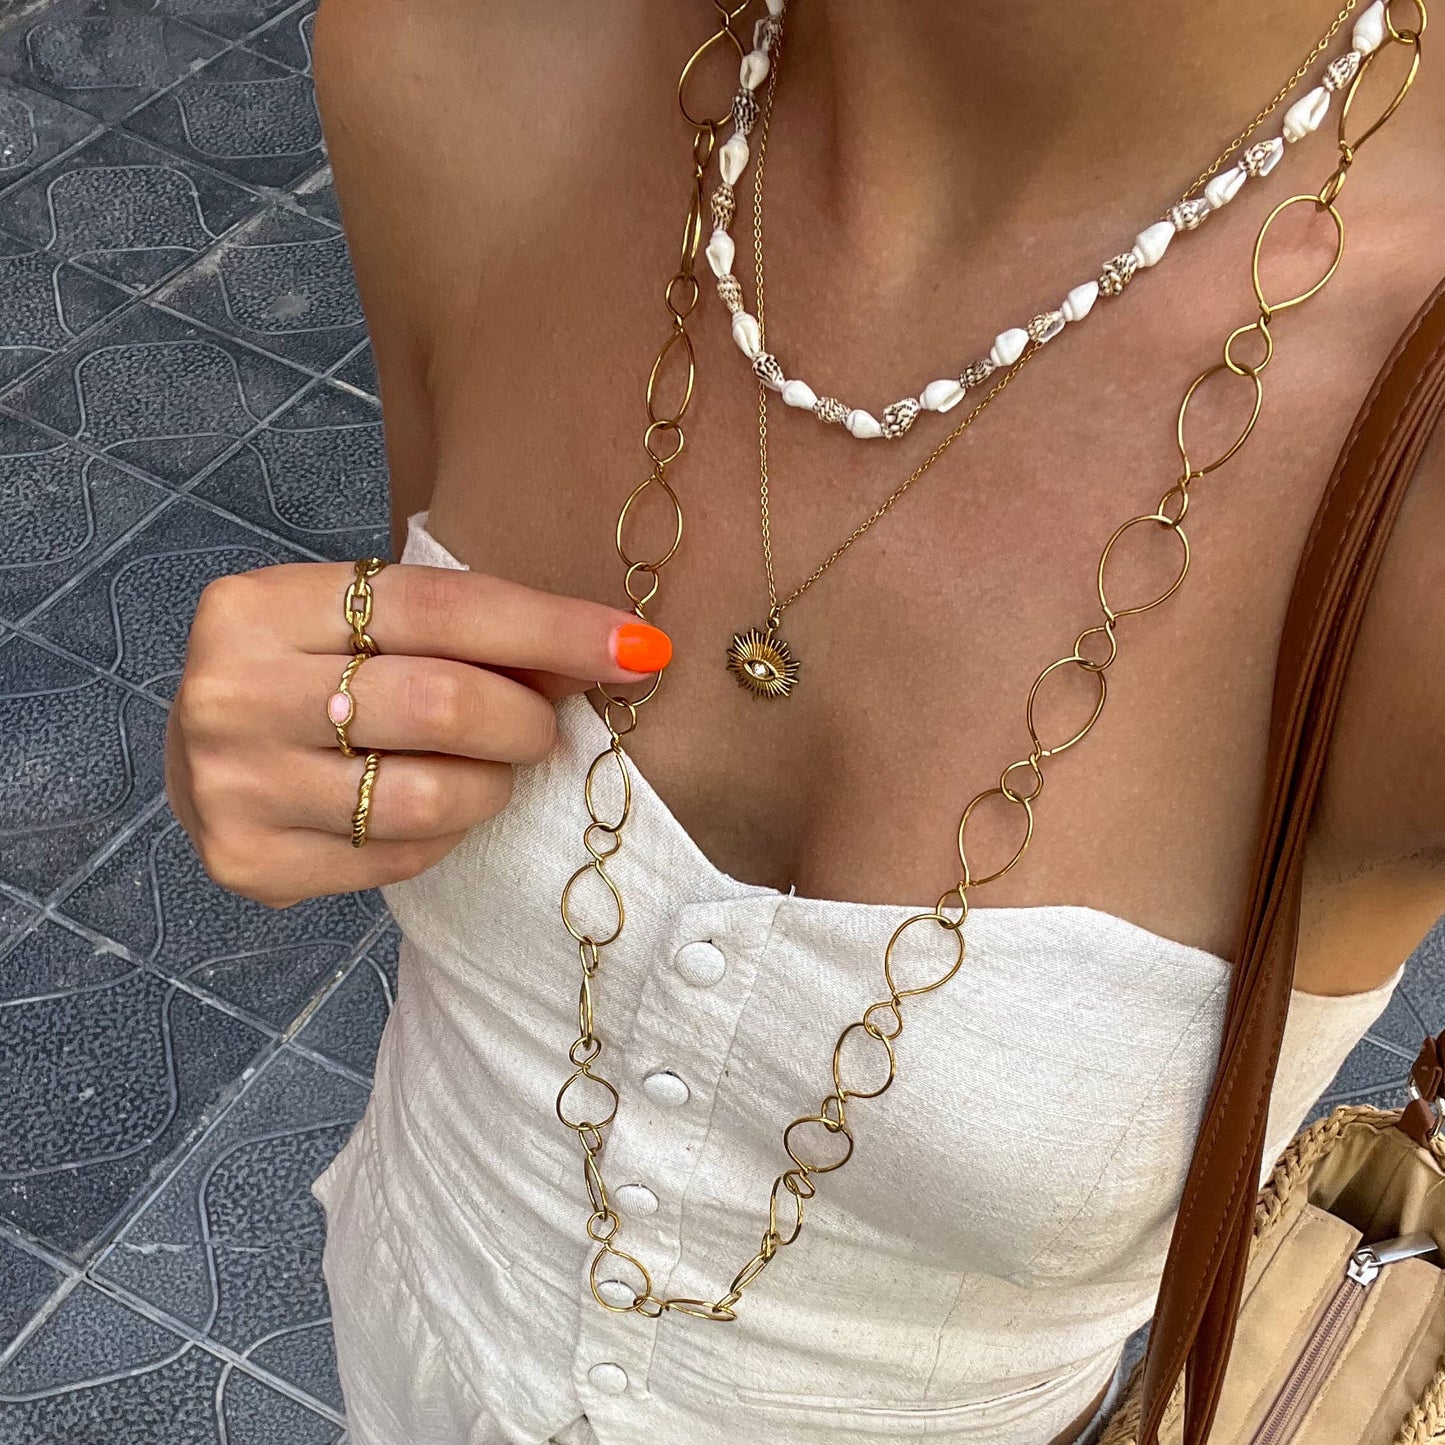 Nicaraguan necklace